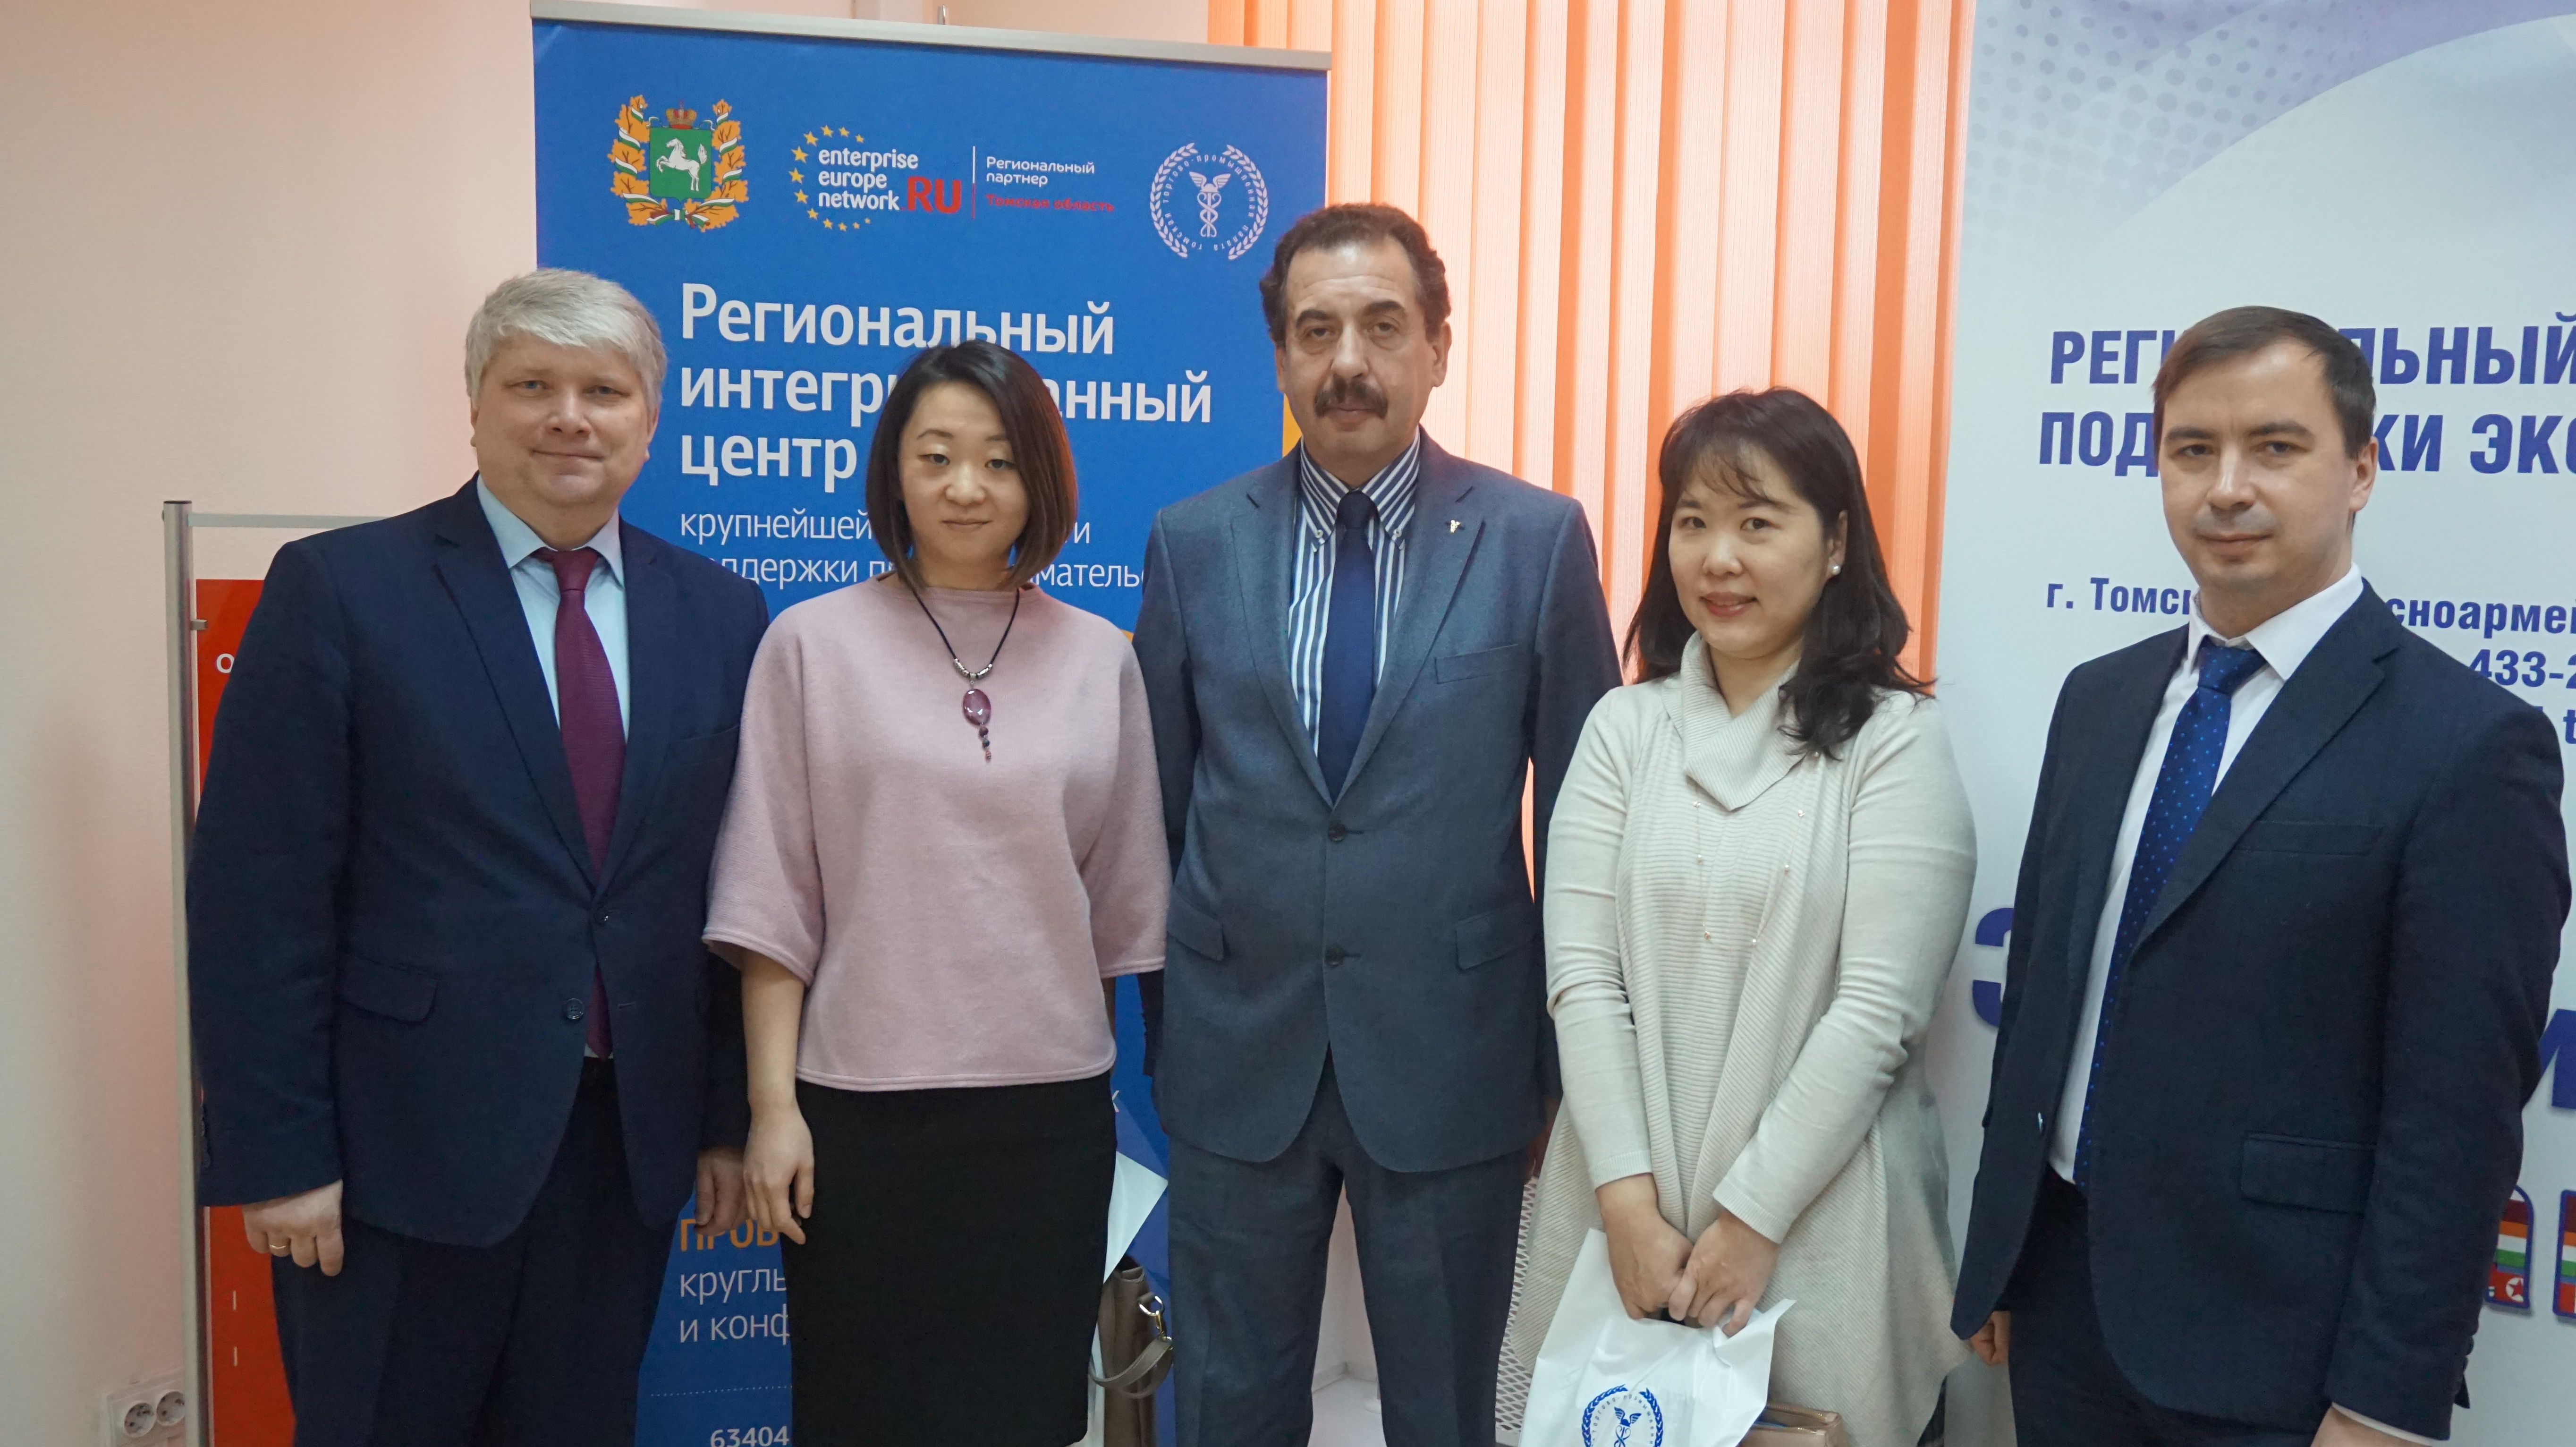 Генеральный директор КОТРА в г. Новосибирск госпожа Пак Ын Хи впервые посетила Томск